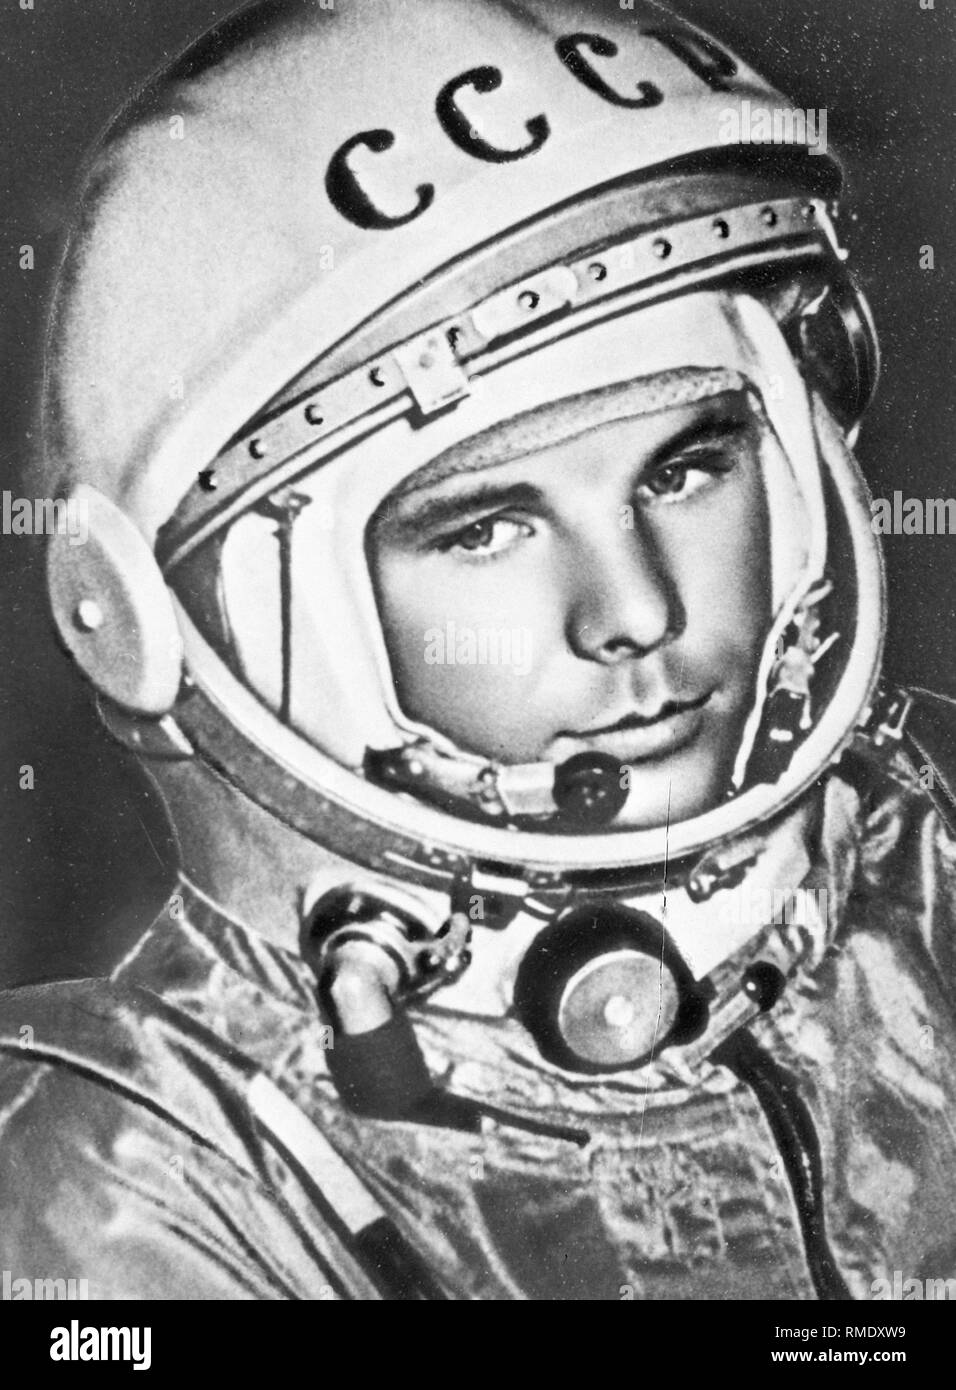 Der Kosmonaut Juri Gagarin (1934-1968), der erste Mensch im Weltraum. Foto Stockfoto